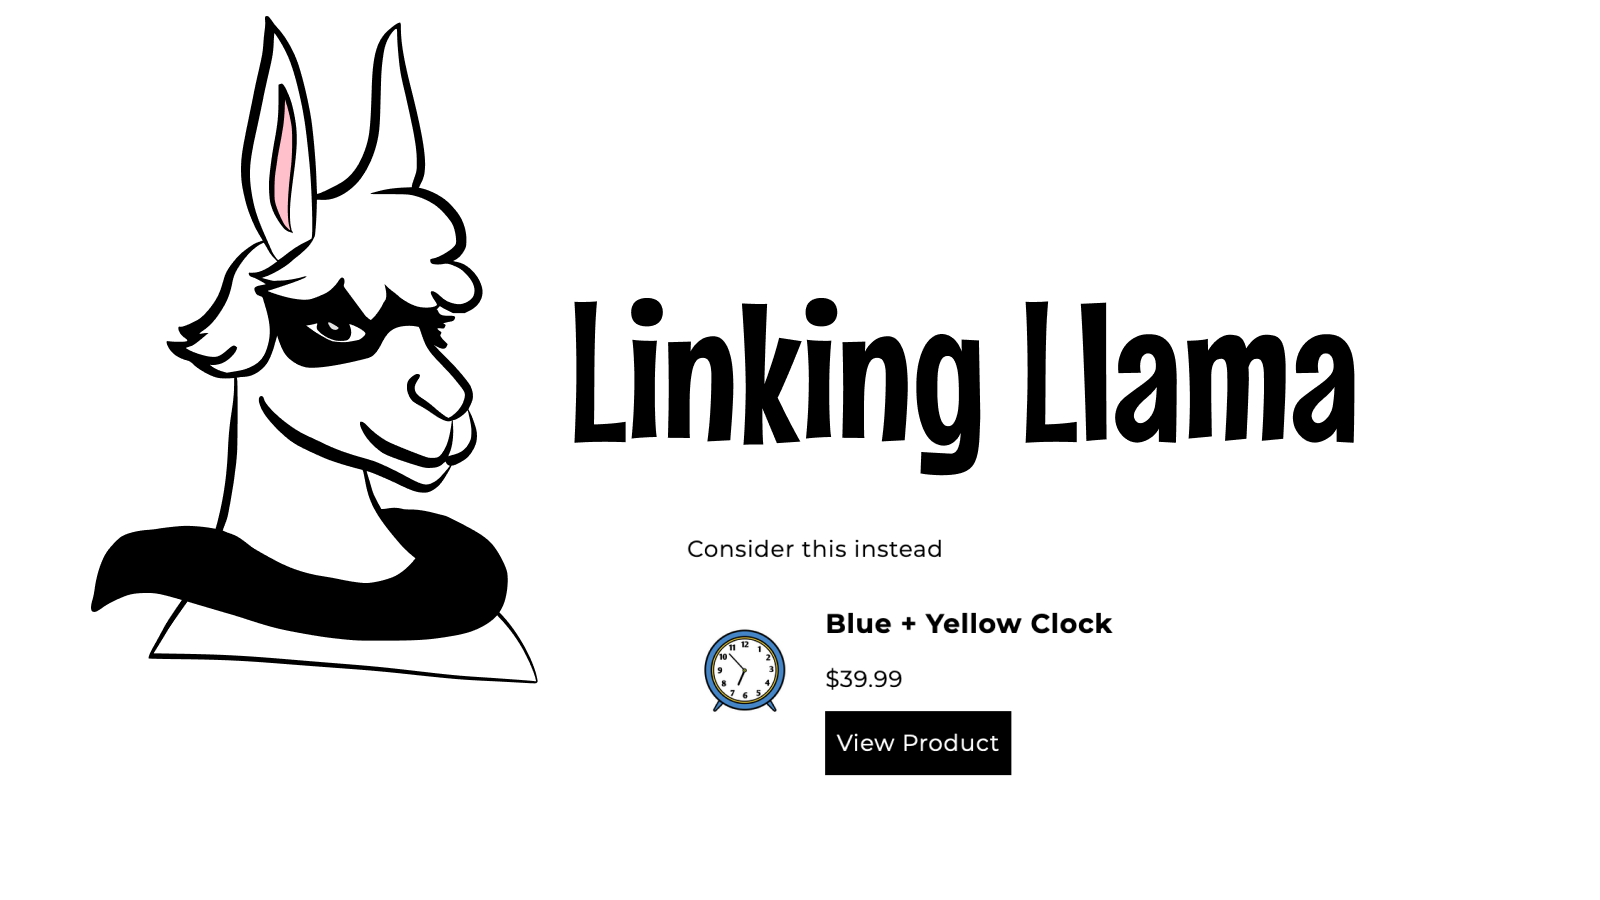 Linking Llama logo med en alternativ produktblok